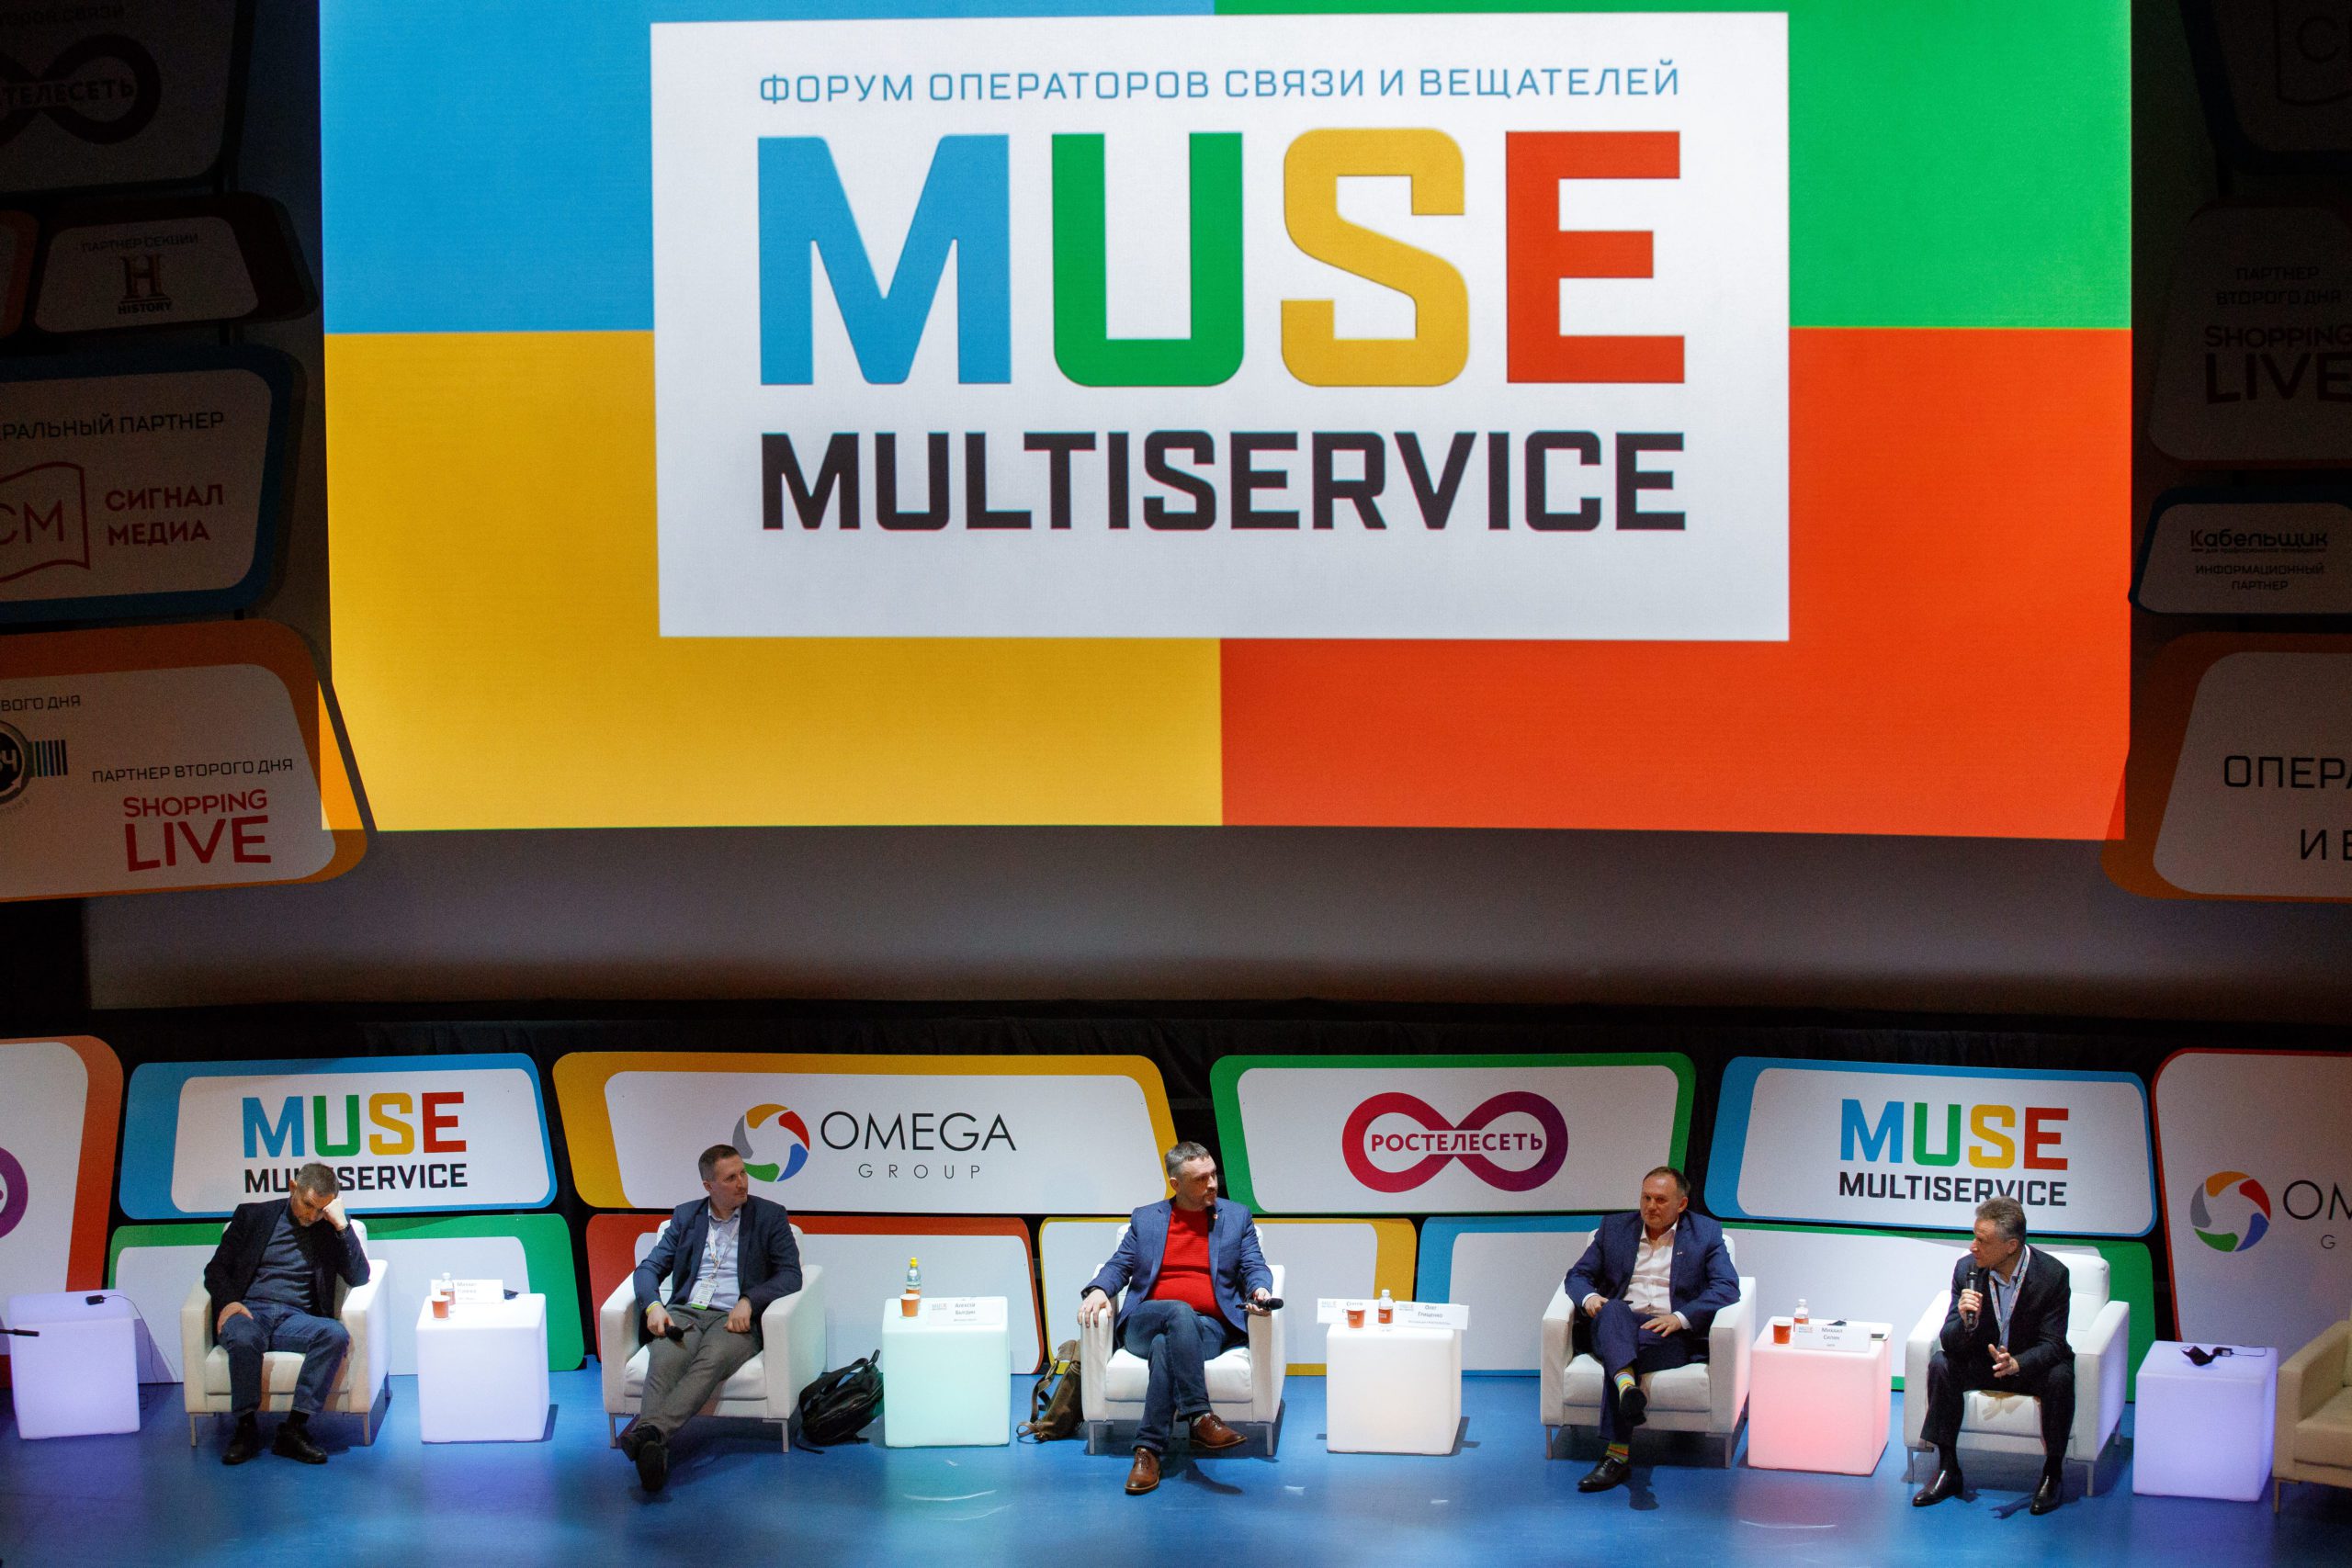 GS Labs примет участие в Форуме операторов связи и вещателей MULTISERVICE (MUSE) 